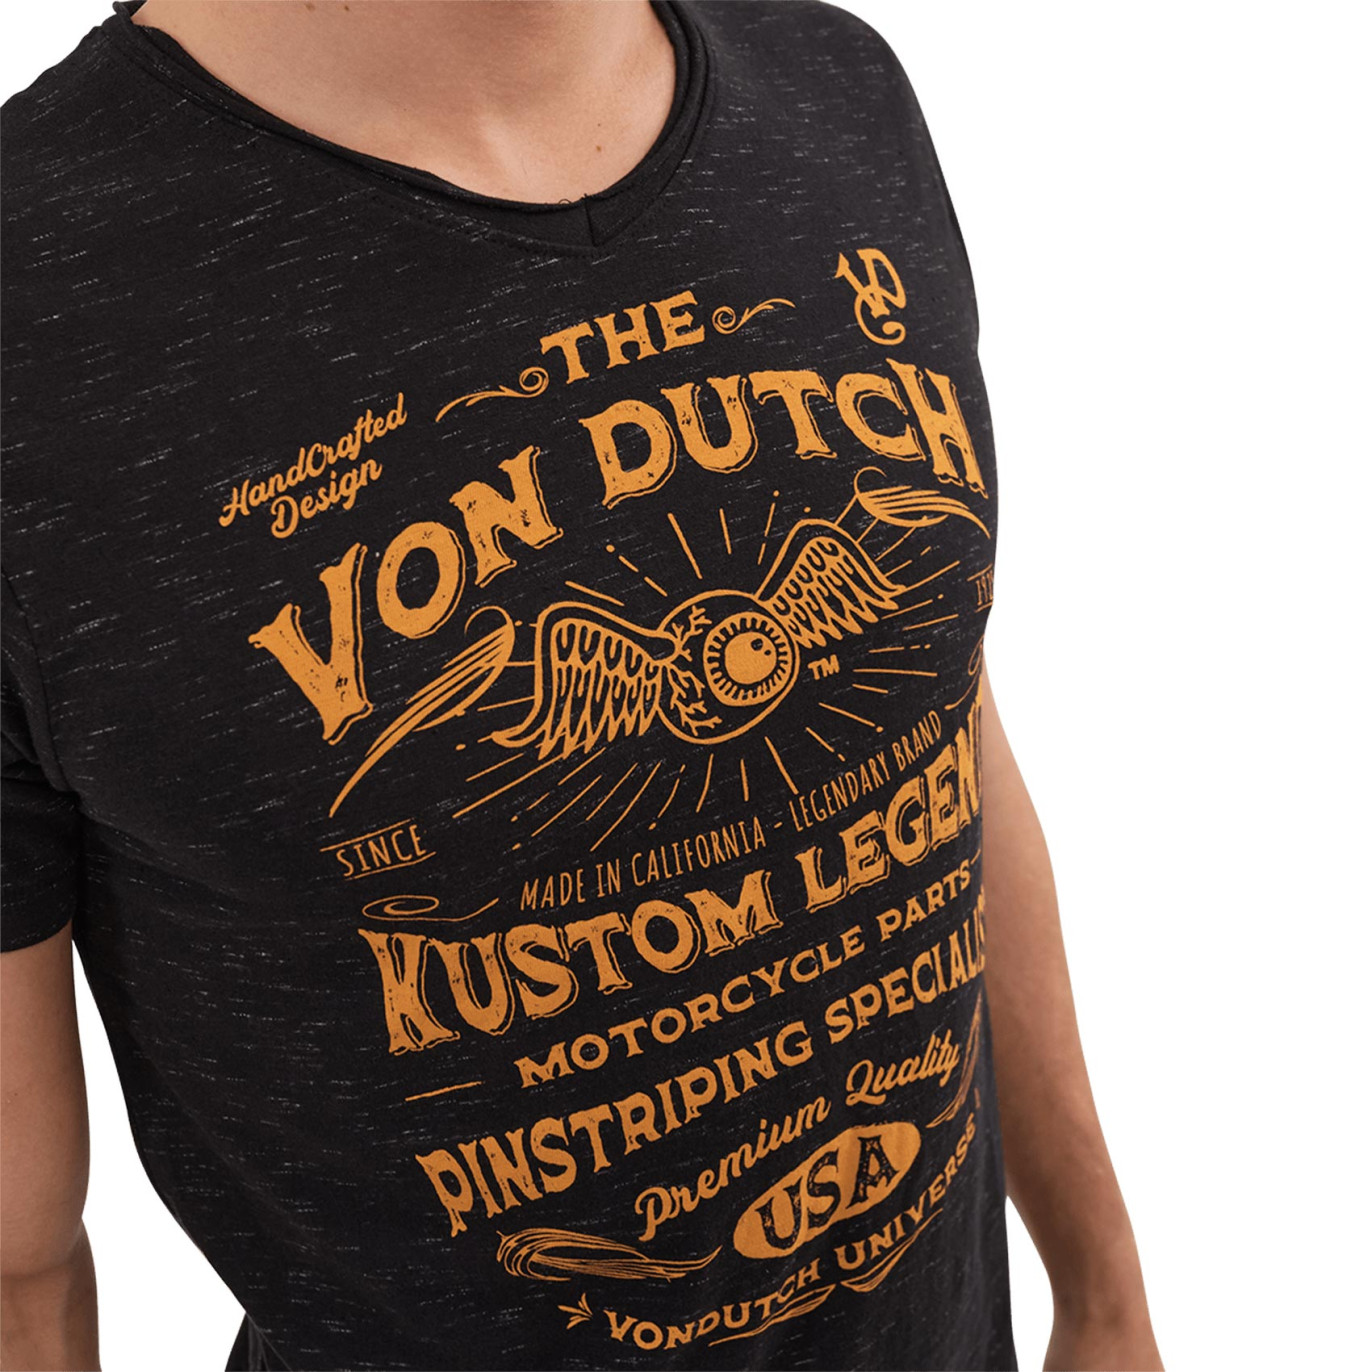 T-Shirts Von Dutch Homme